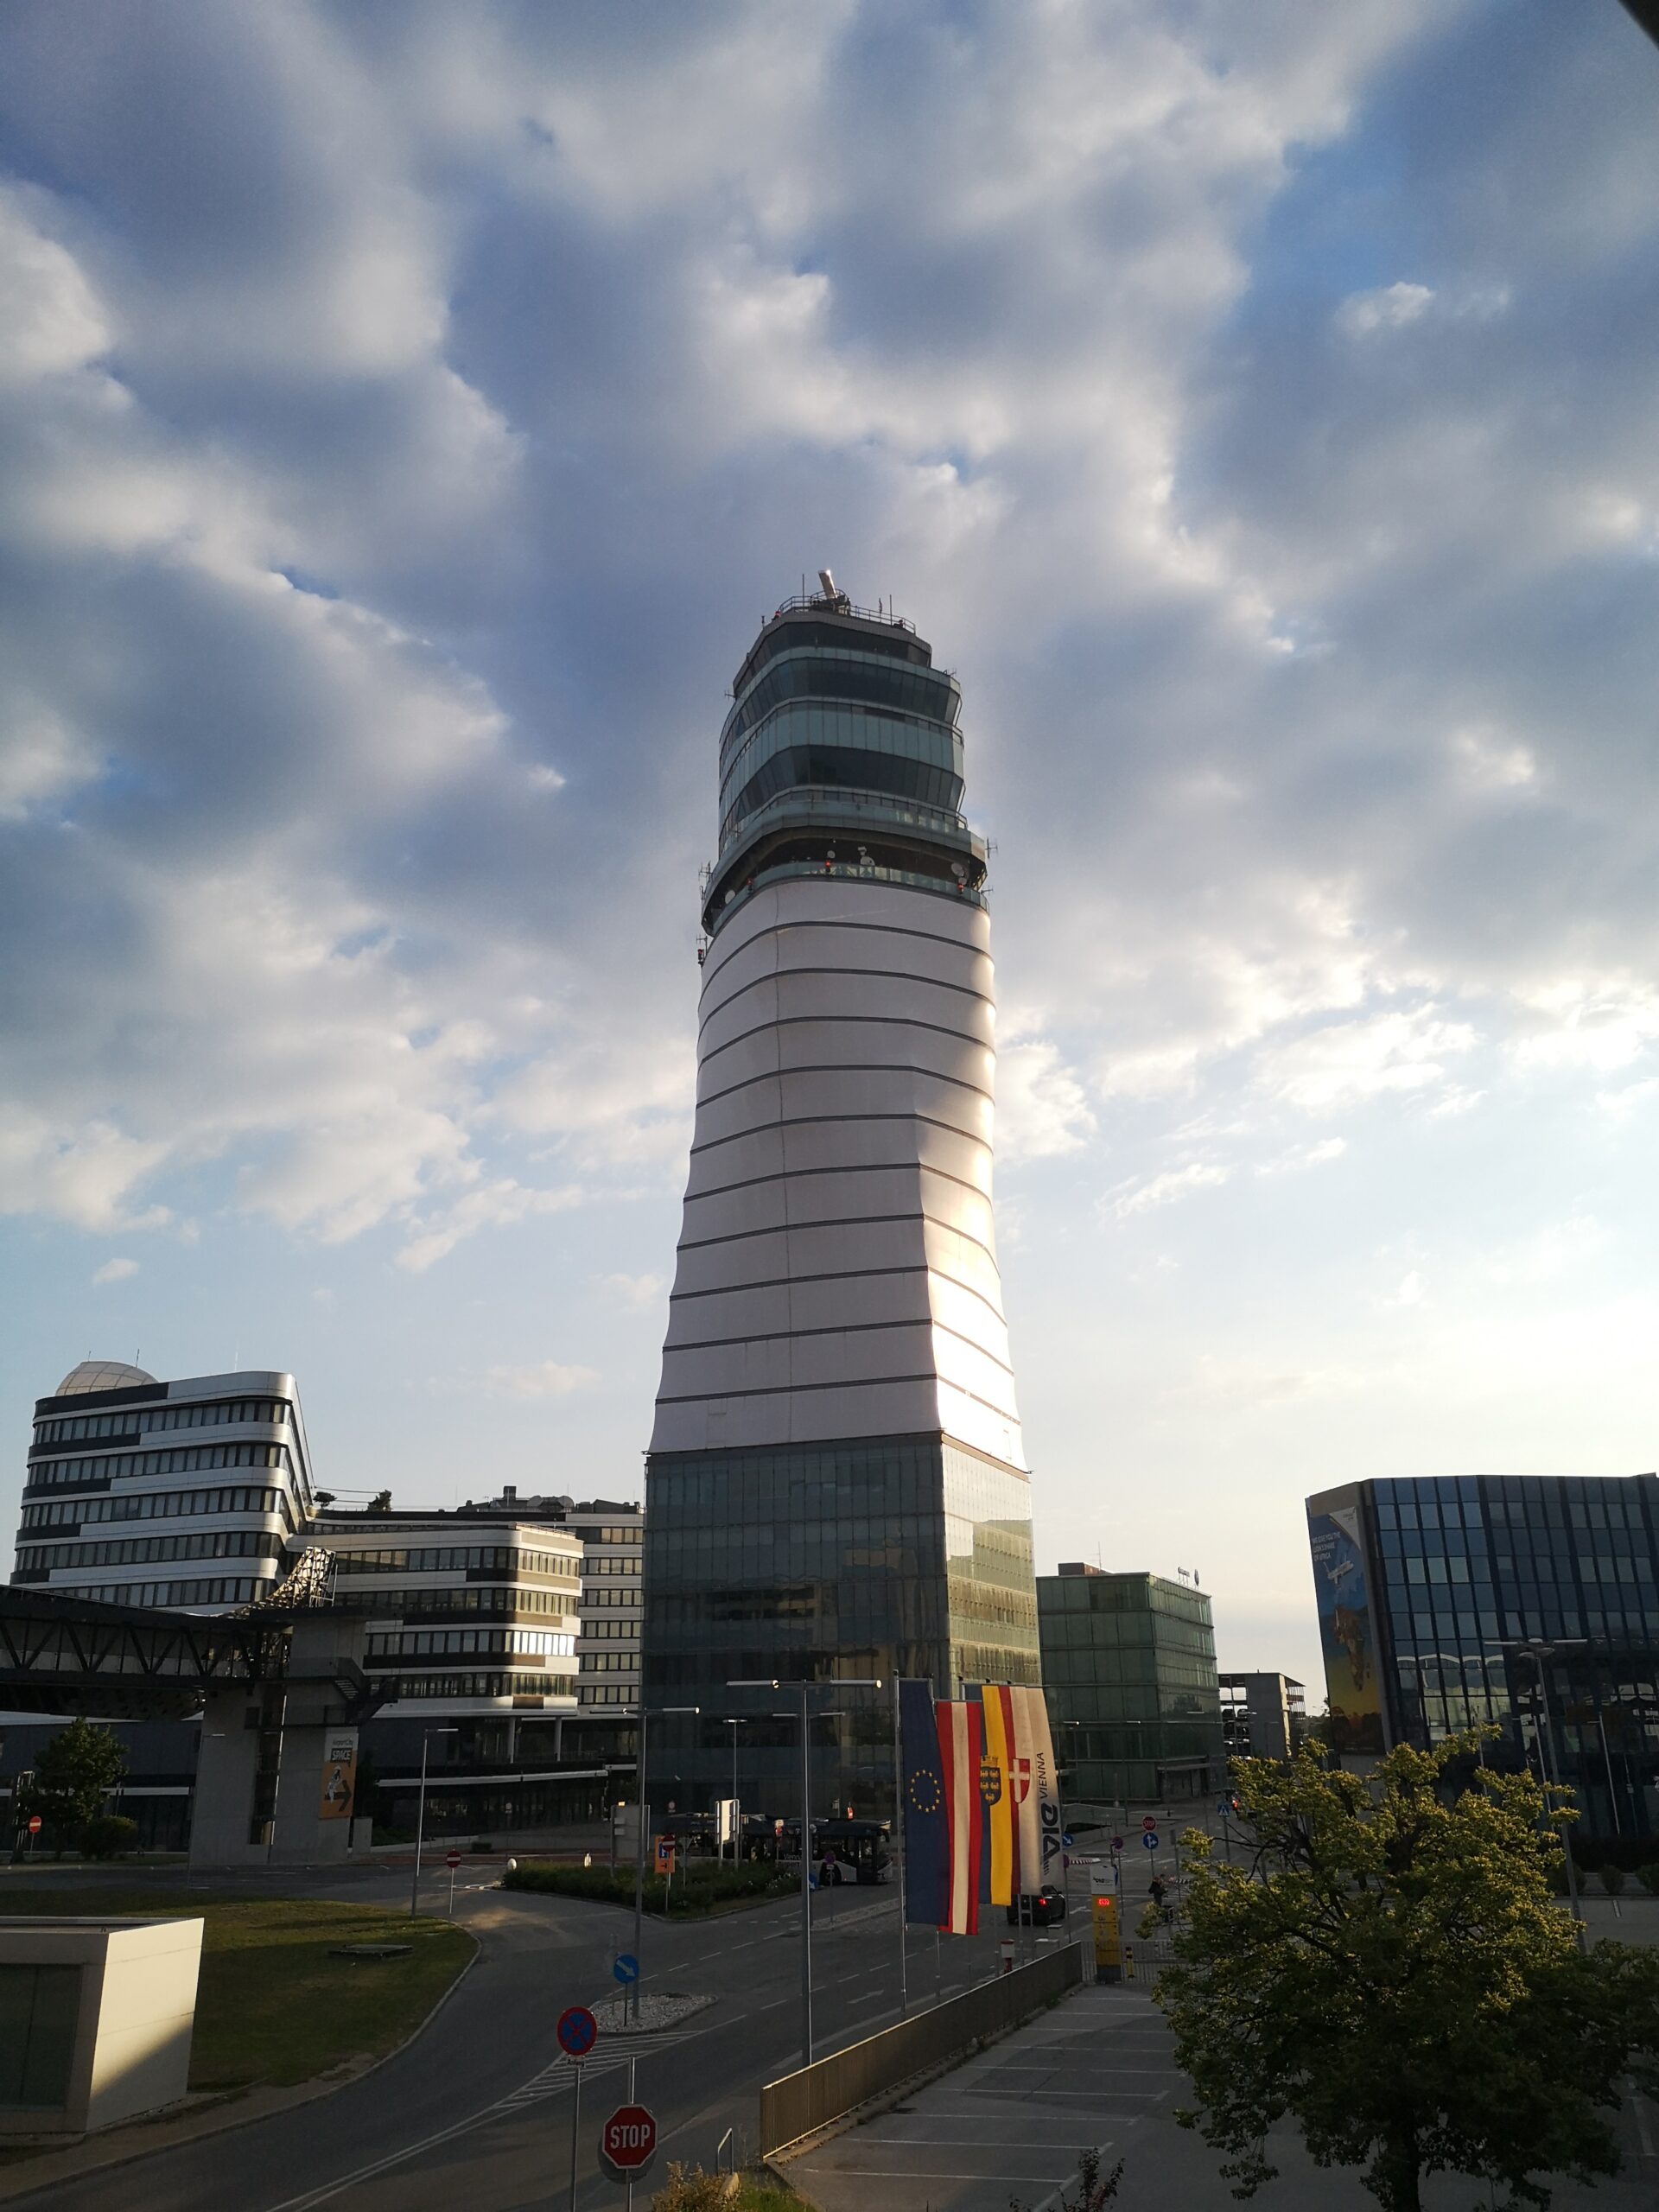 Flughafentower Wien Schwechat